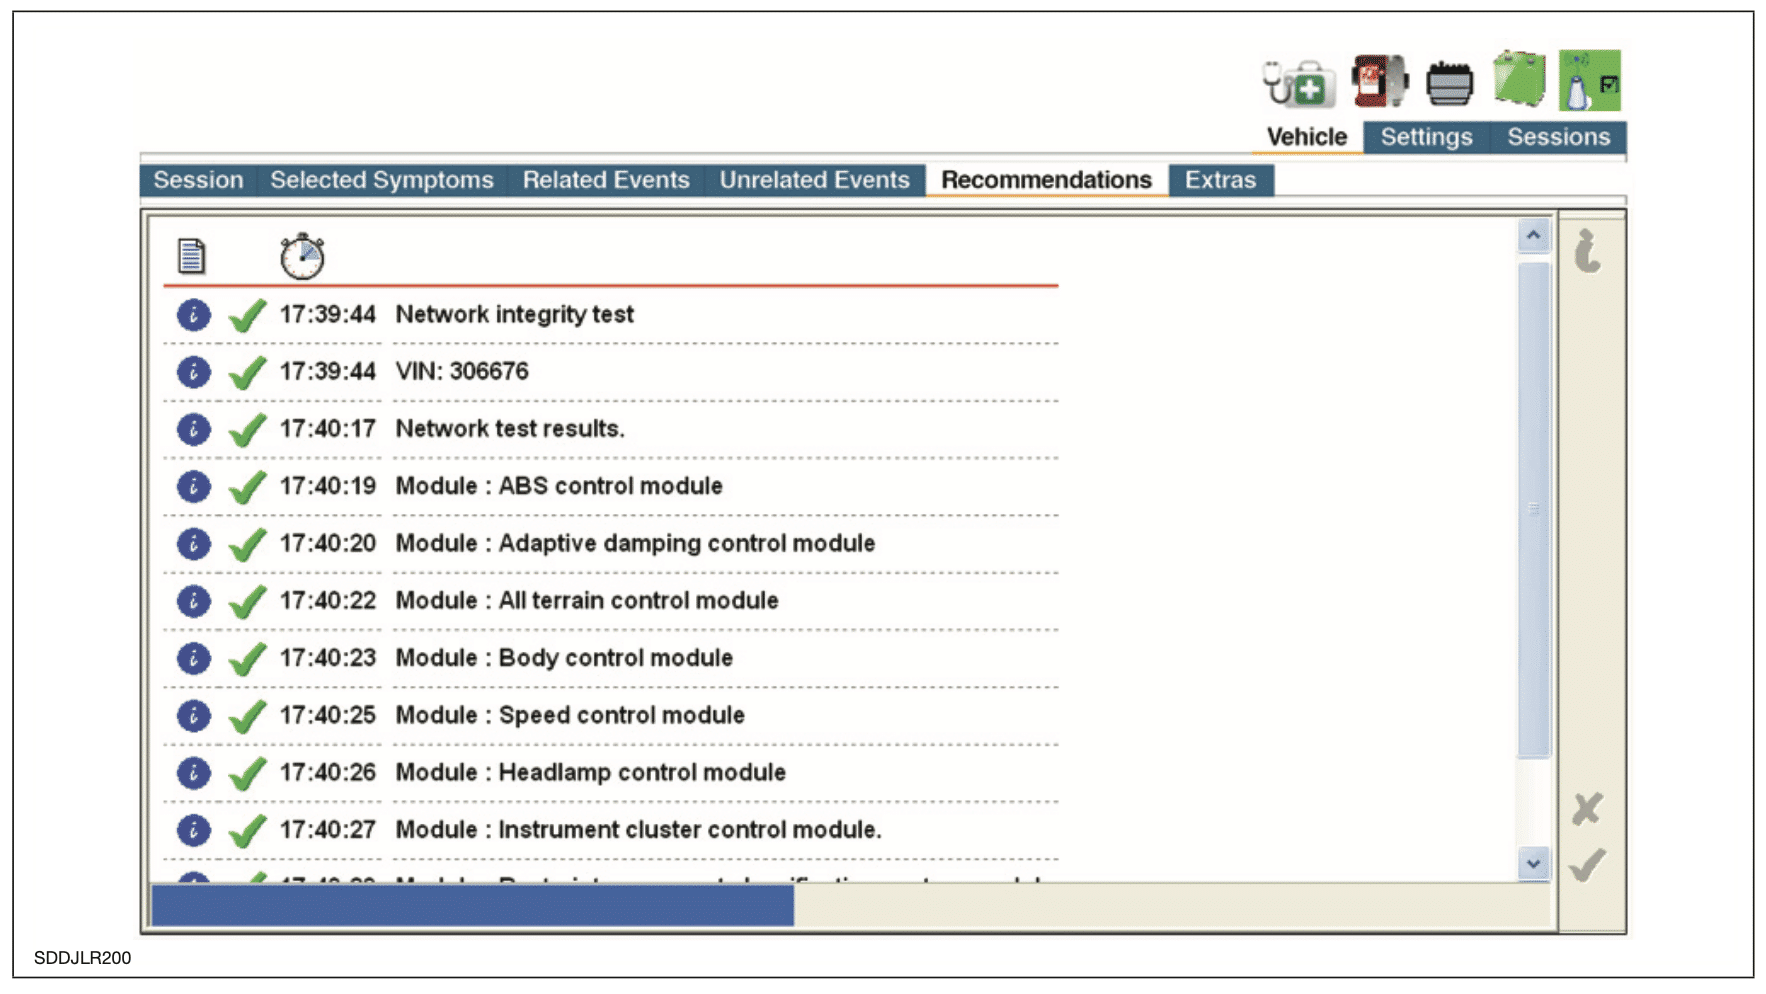 لقطة شاشة جلسة برنامج JLR SDD لقائمة مراجعة الإجراءات الموصى بها بعد تقرير أعراض السيارة